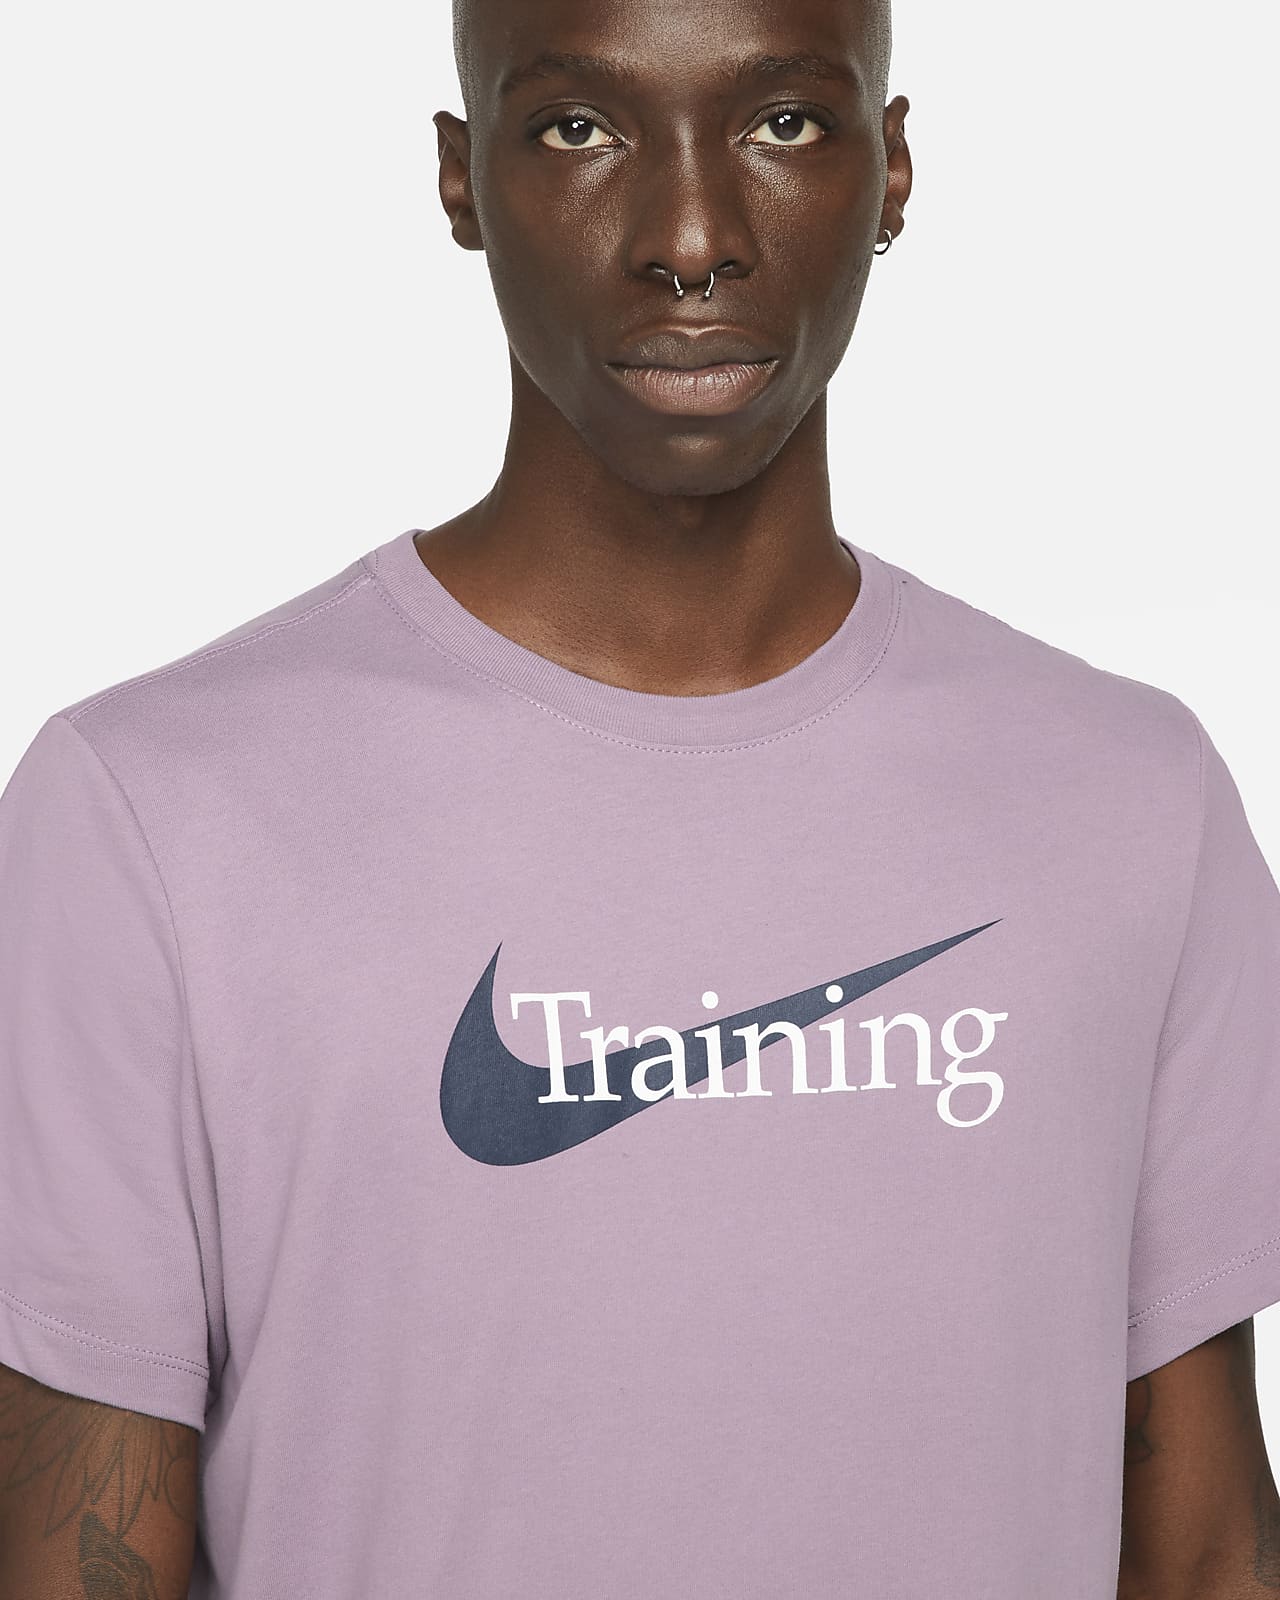 Nike Dri-FIT Men's Swoosh Training T-Shirt. Nike.com